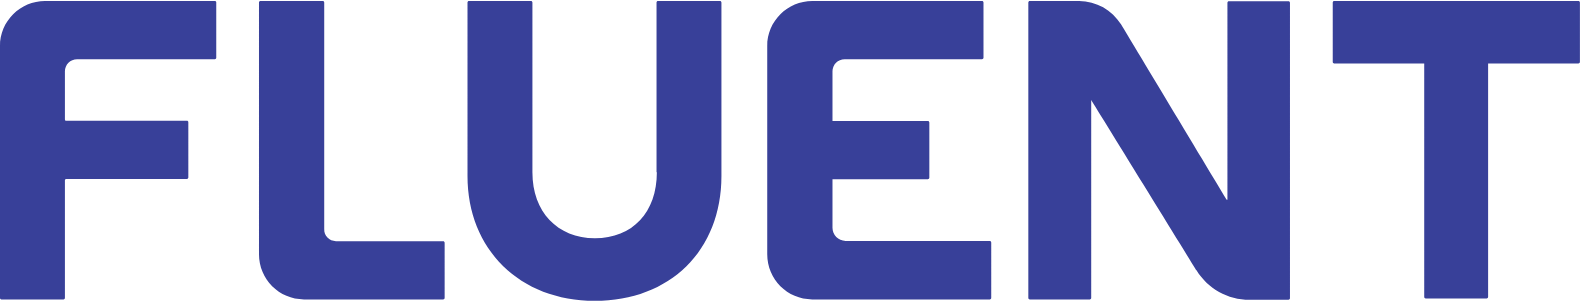 Fluent logo large (transparent PNG)